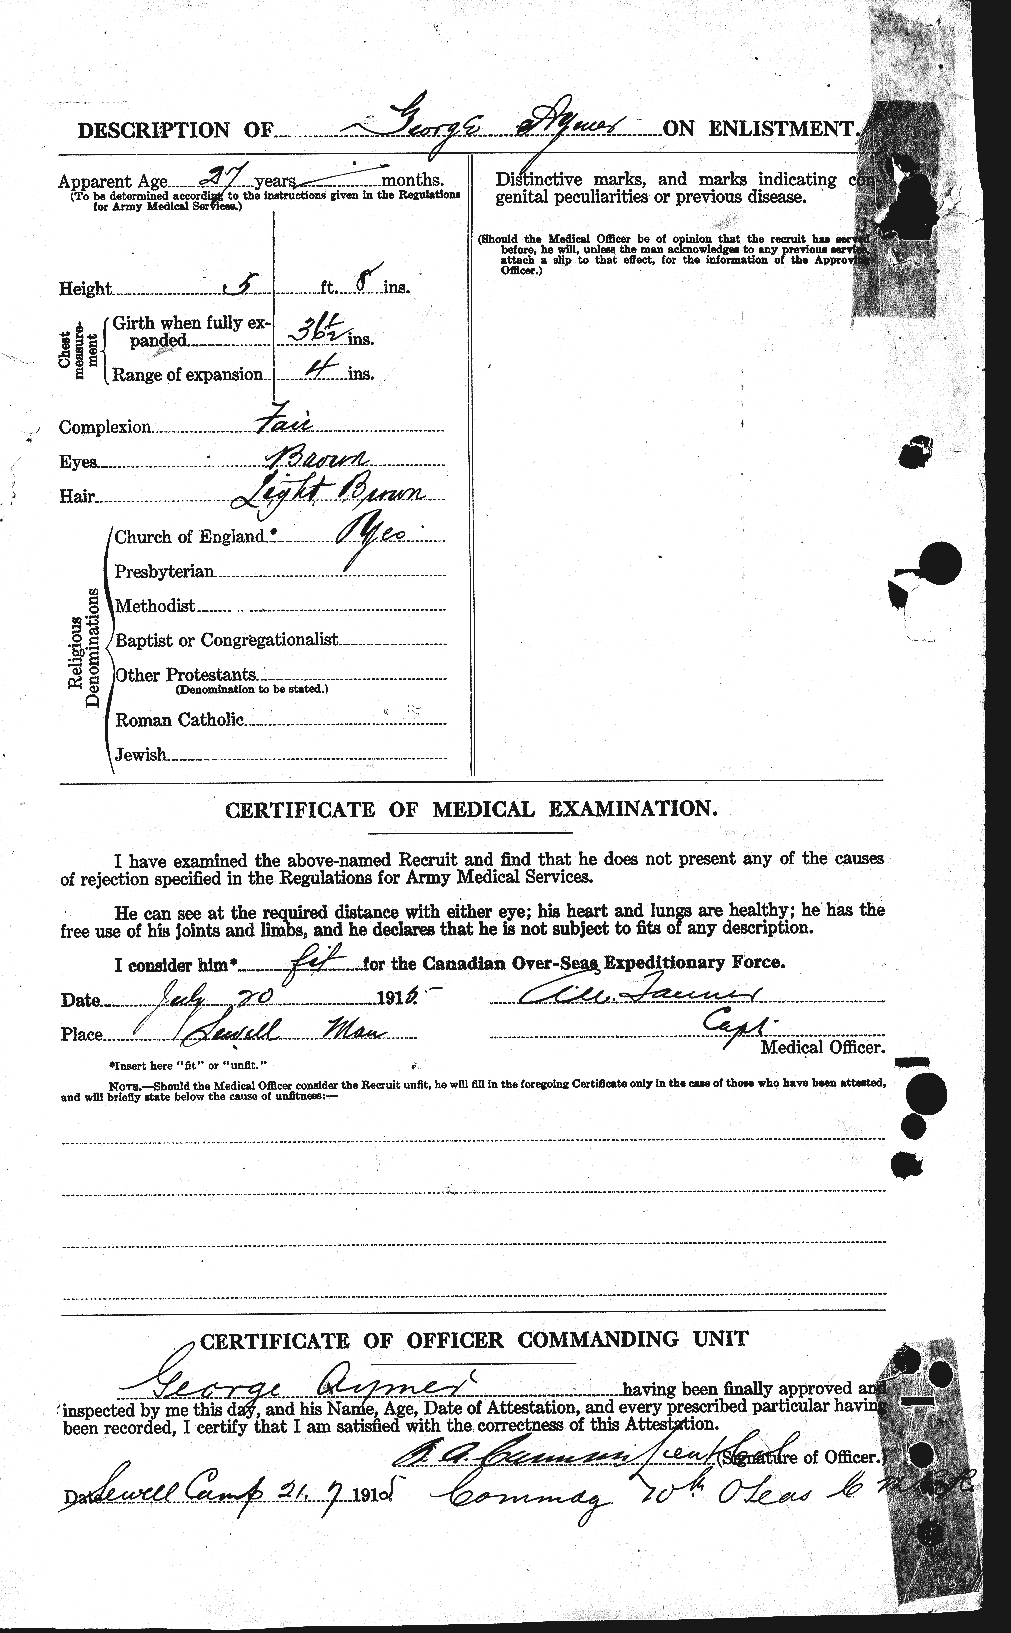 Dossiers du Personnel de la Première Guerre mondiale - CEC 215718b